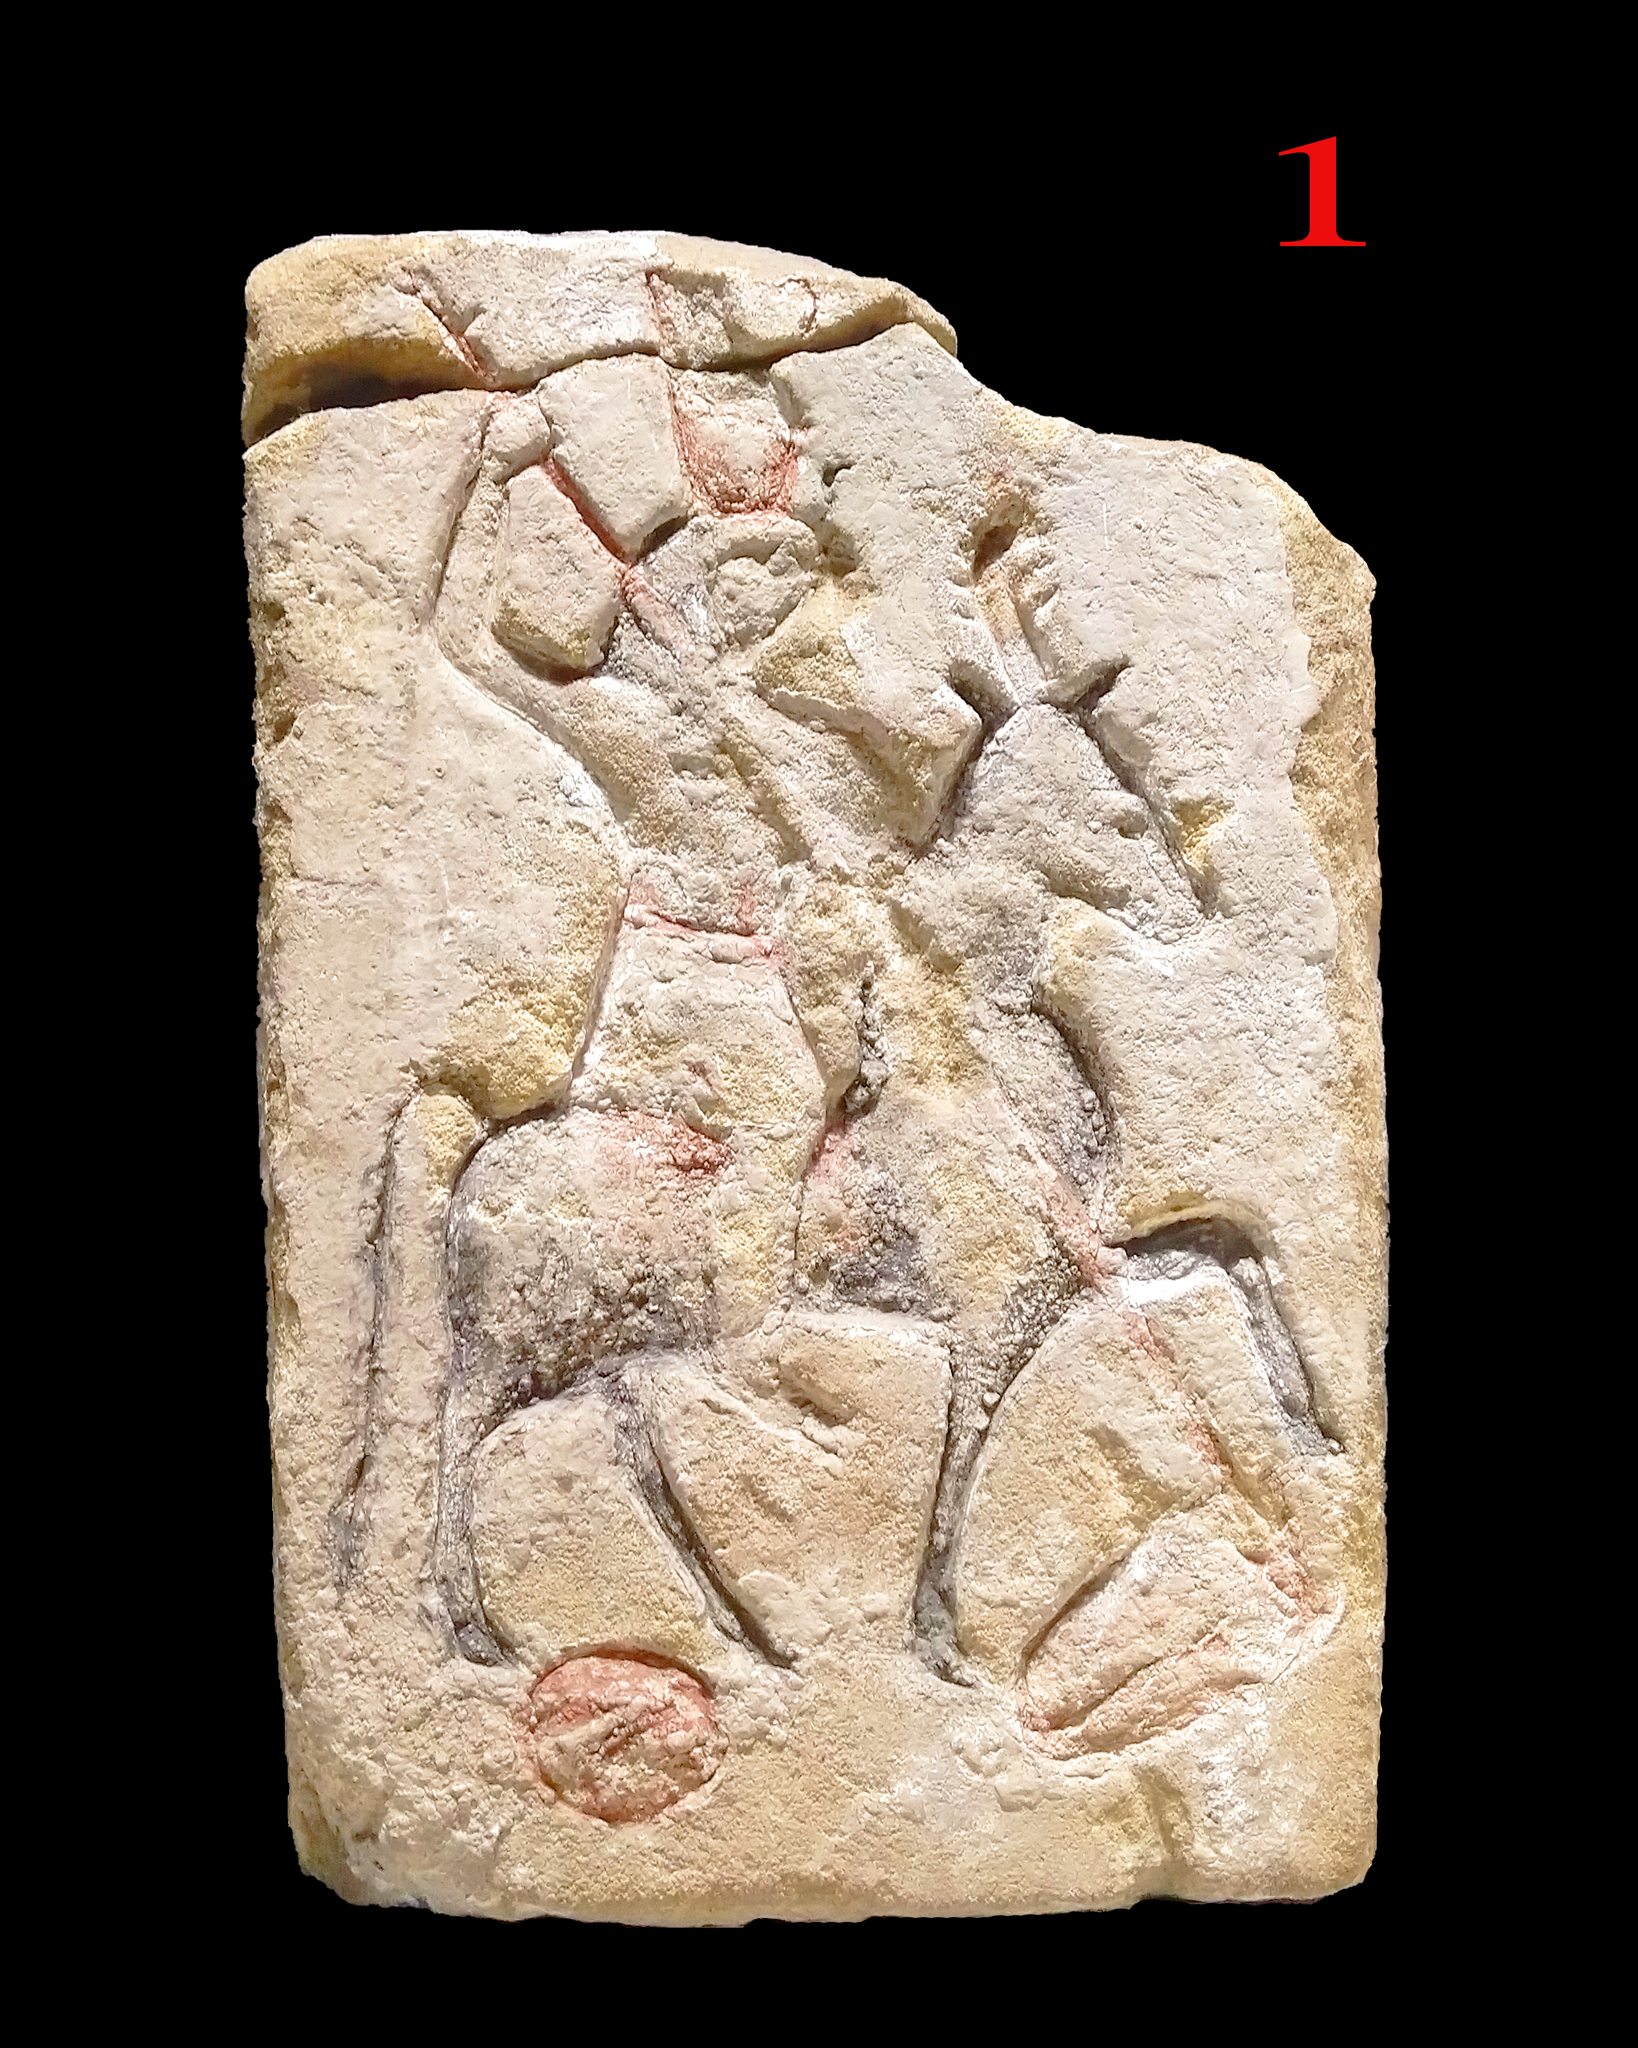 لوحة عليها نقش يصور عليها الفرعون في هيئة مركبة بجسد آدمي ورأس الصقر يمتطي جواد